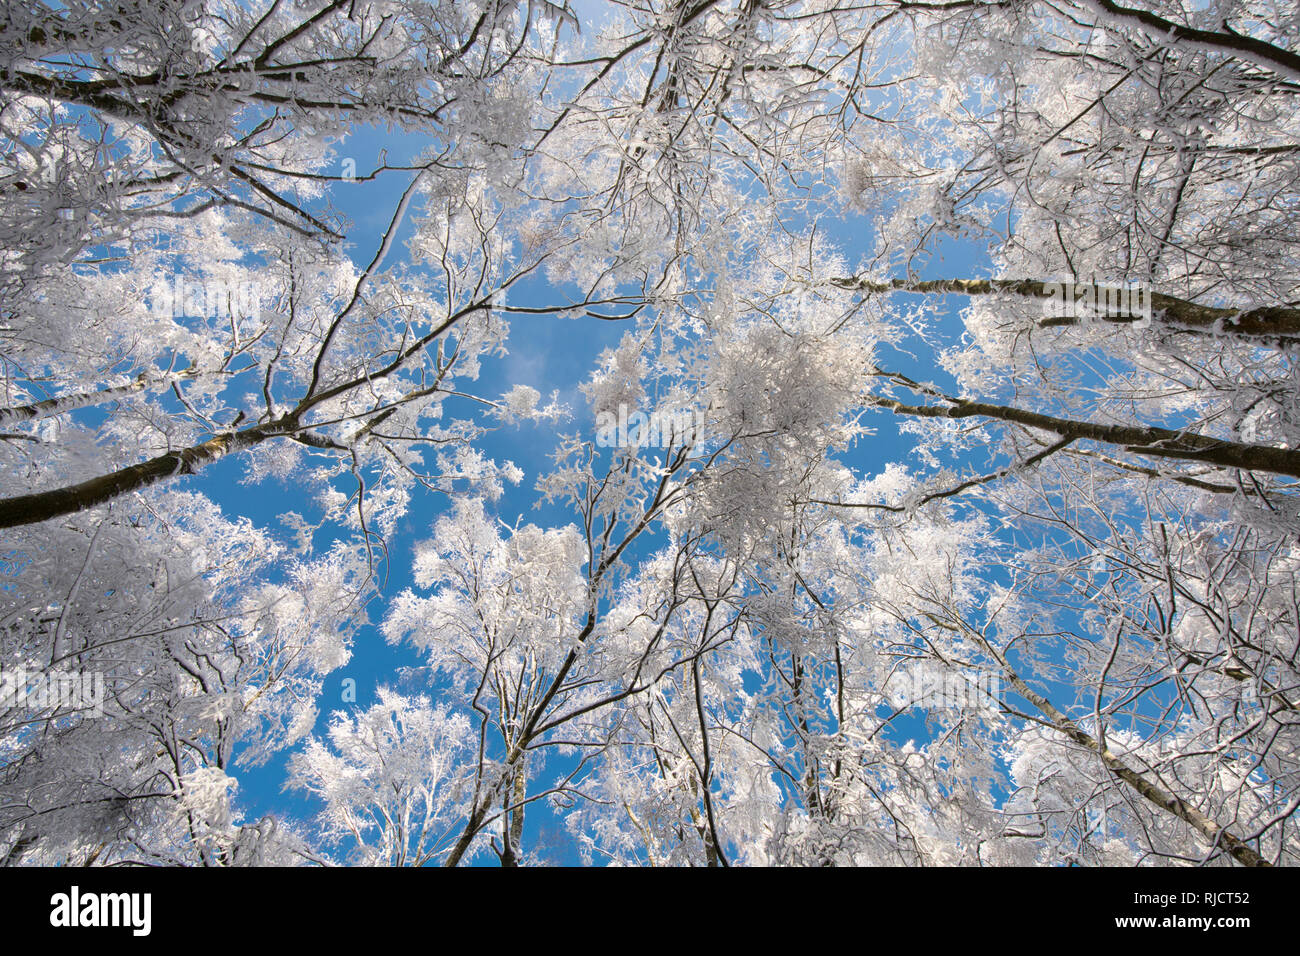 Ludshott comune, neve pesante copertura di alberi, vista verticale al di sopra di tree tops, cielo blu, Gennaio, Surrey, Regno Unito. Foto Stock